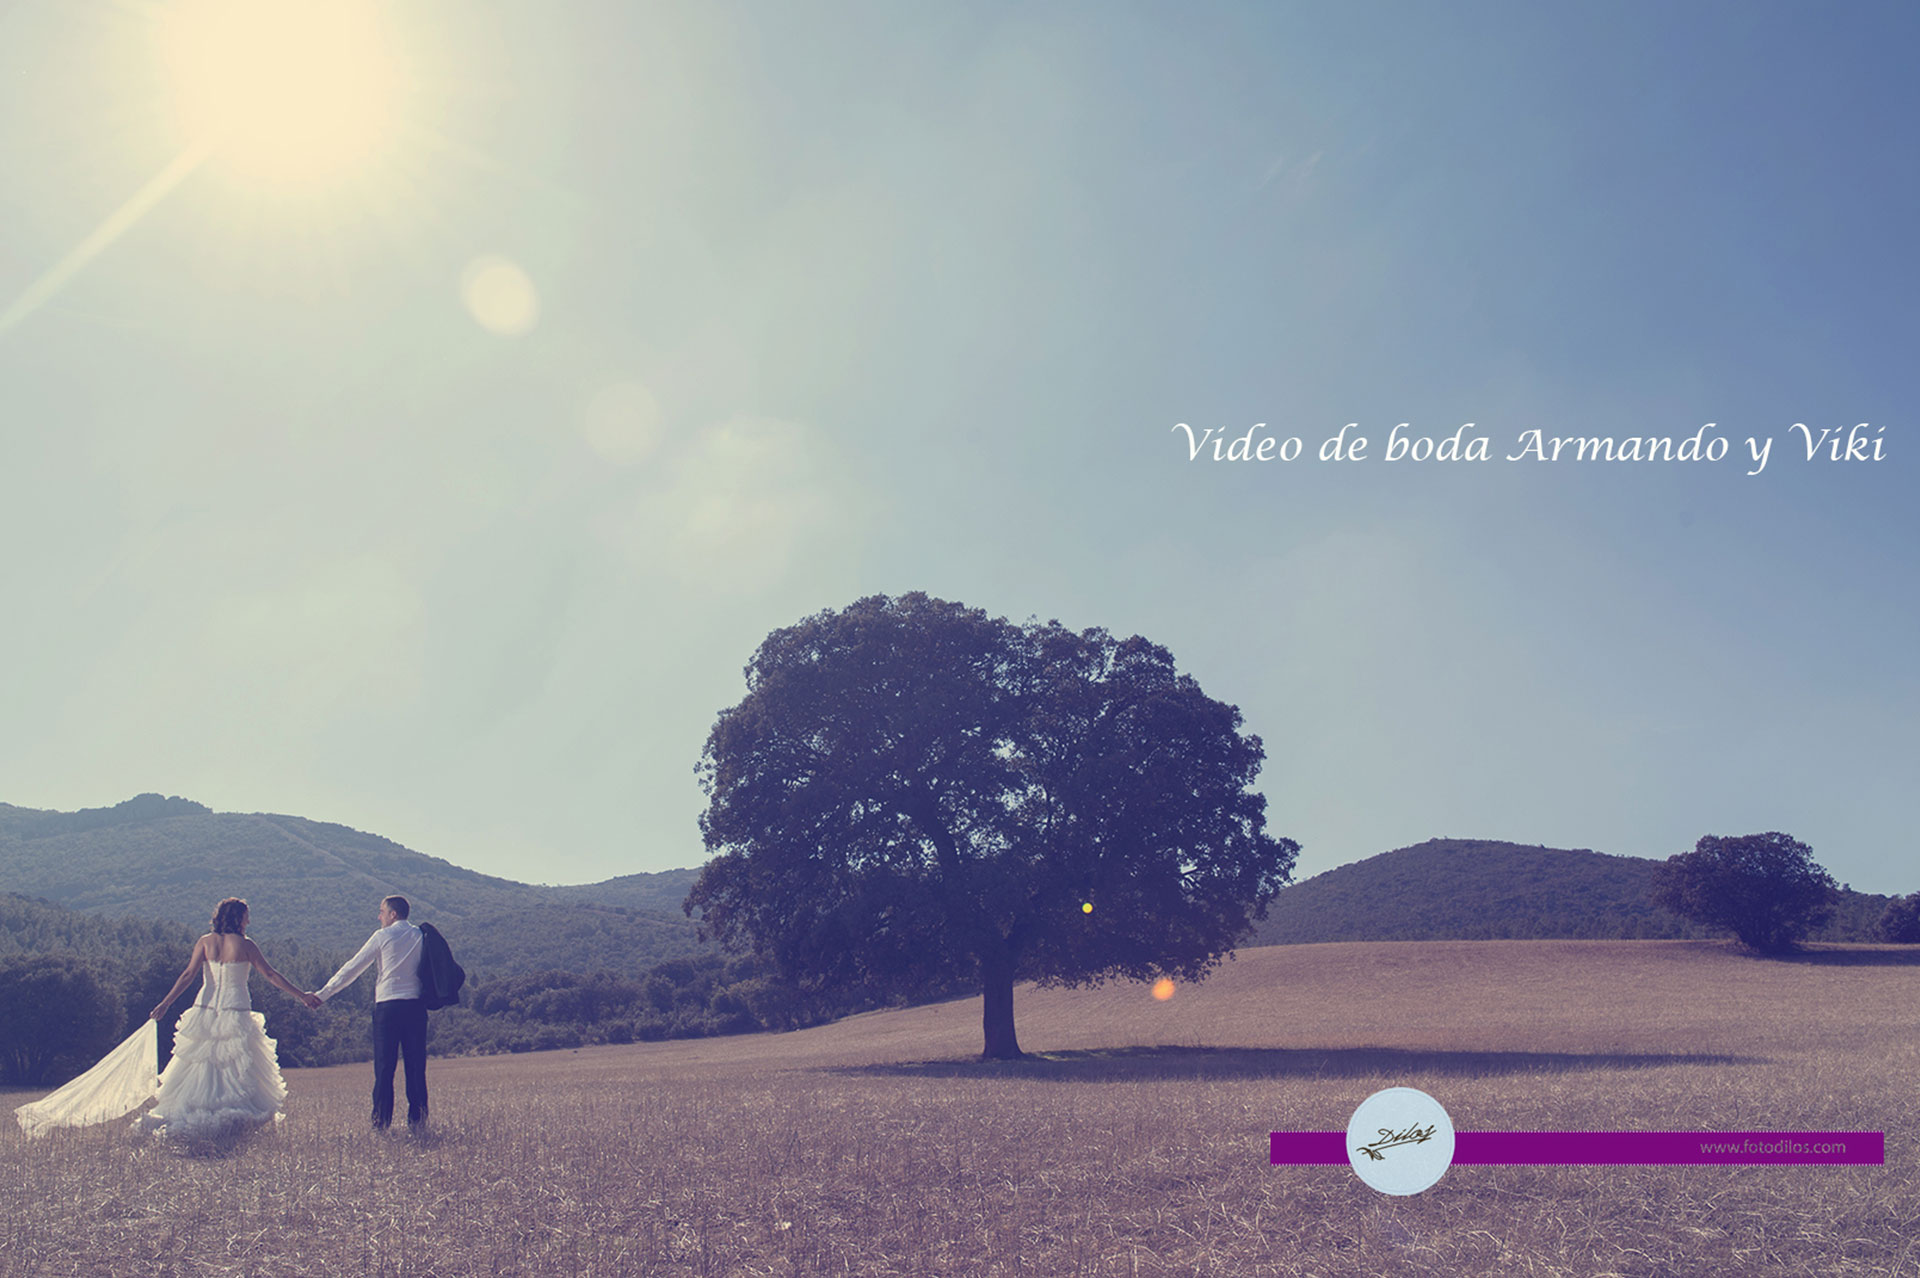 Vídeo de boda en la Mancha, Armando y Viki